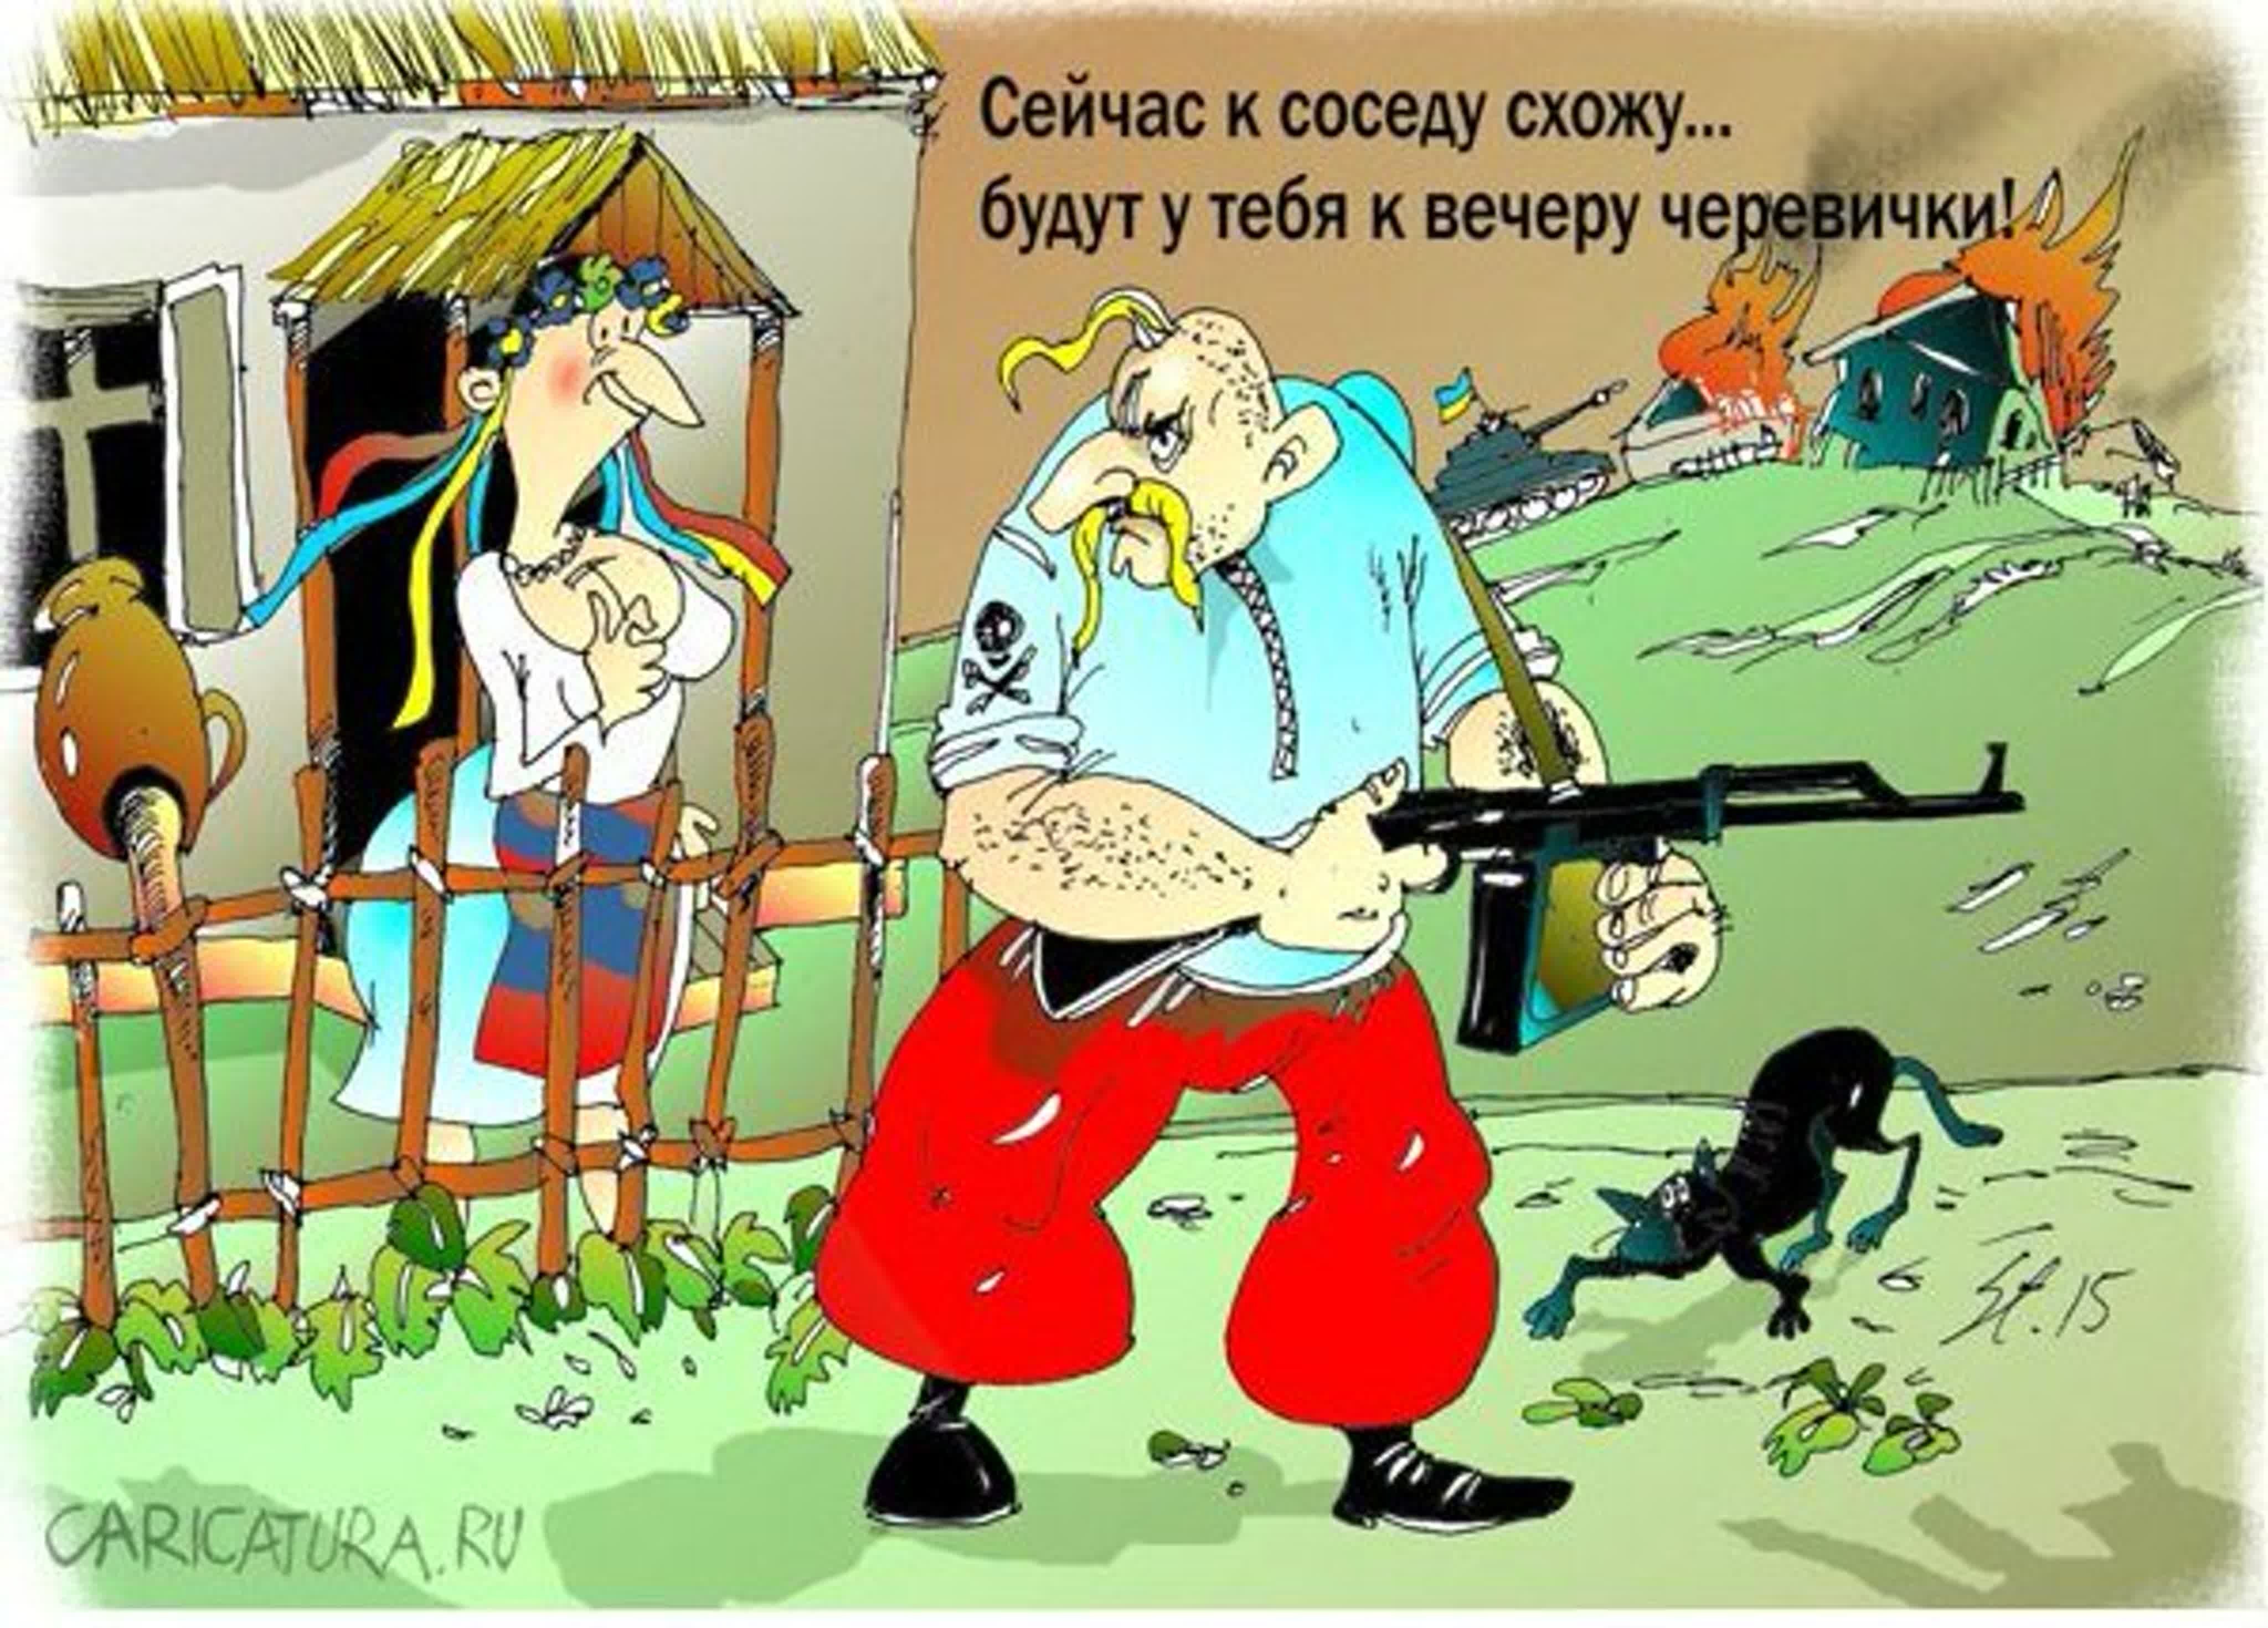 Пошли красть. Карикатуры на Хохлов. Карикатуры на украинцев. Карикатуры на Украину. Смешные карикатуры про Украину.